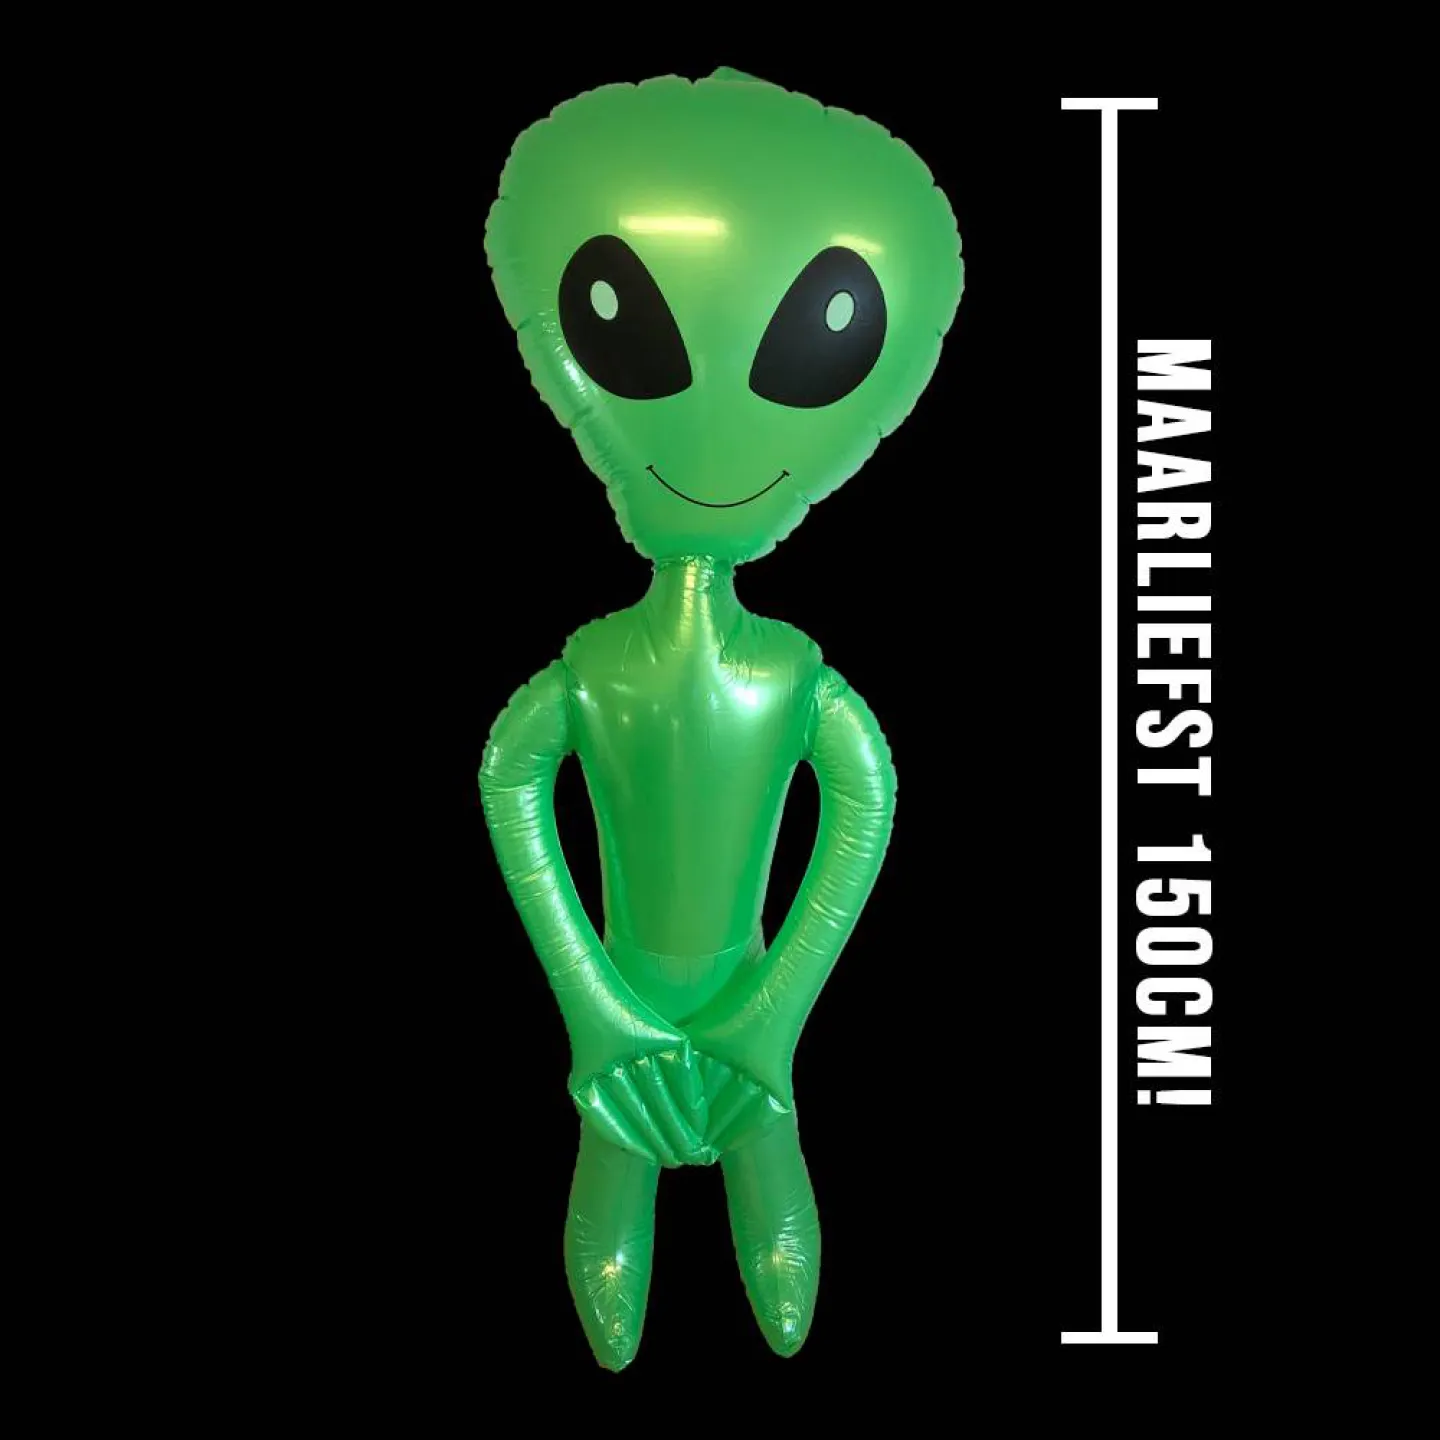 Groene opblaas artikelen alien.